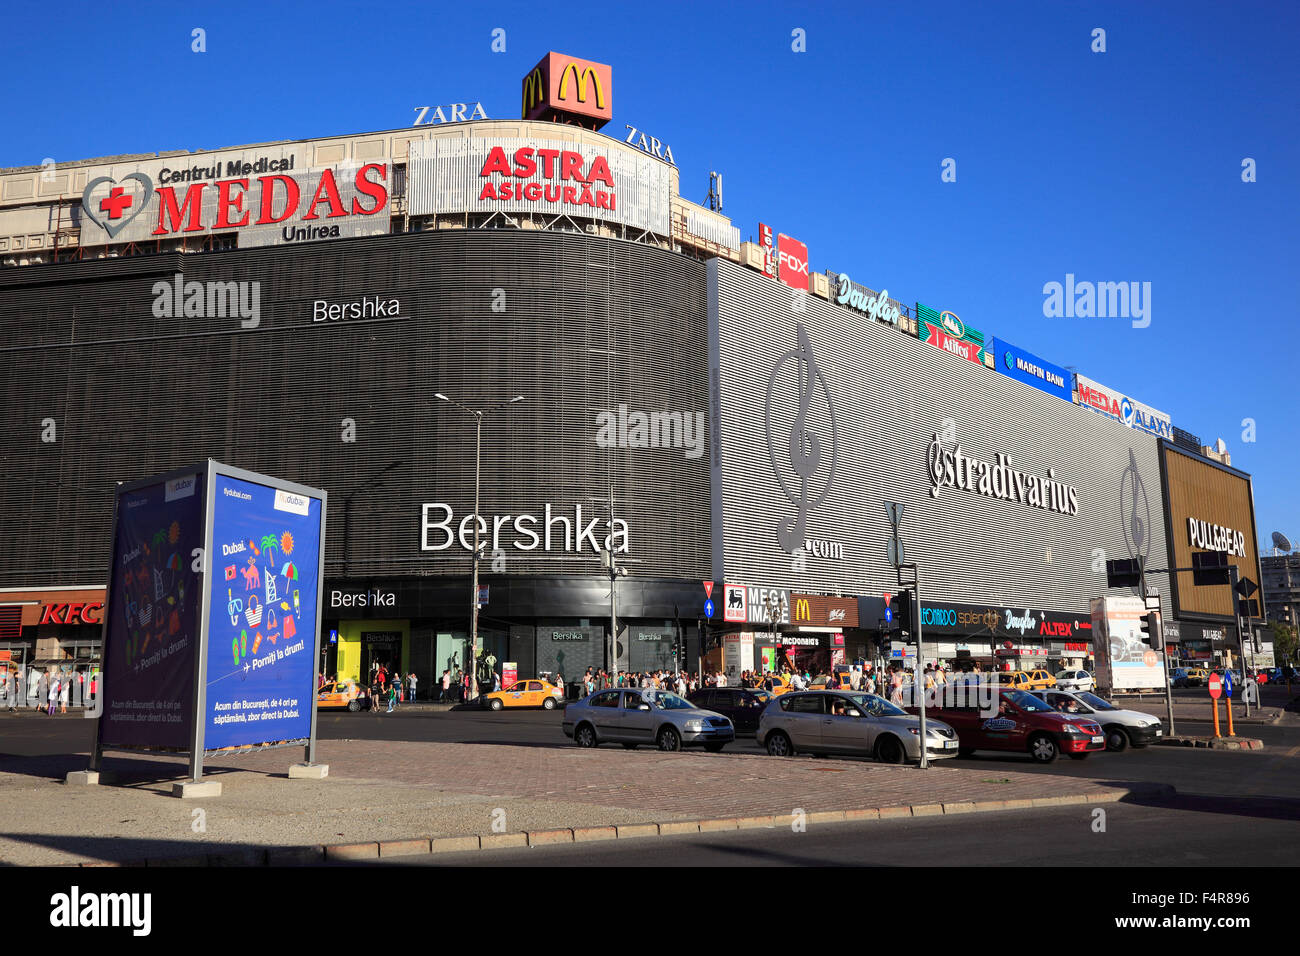 Bershka shopping Banque de photographies et d'images à haute résolution -  Alamy